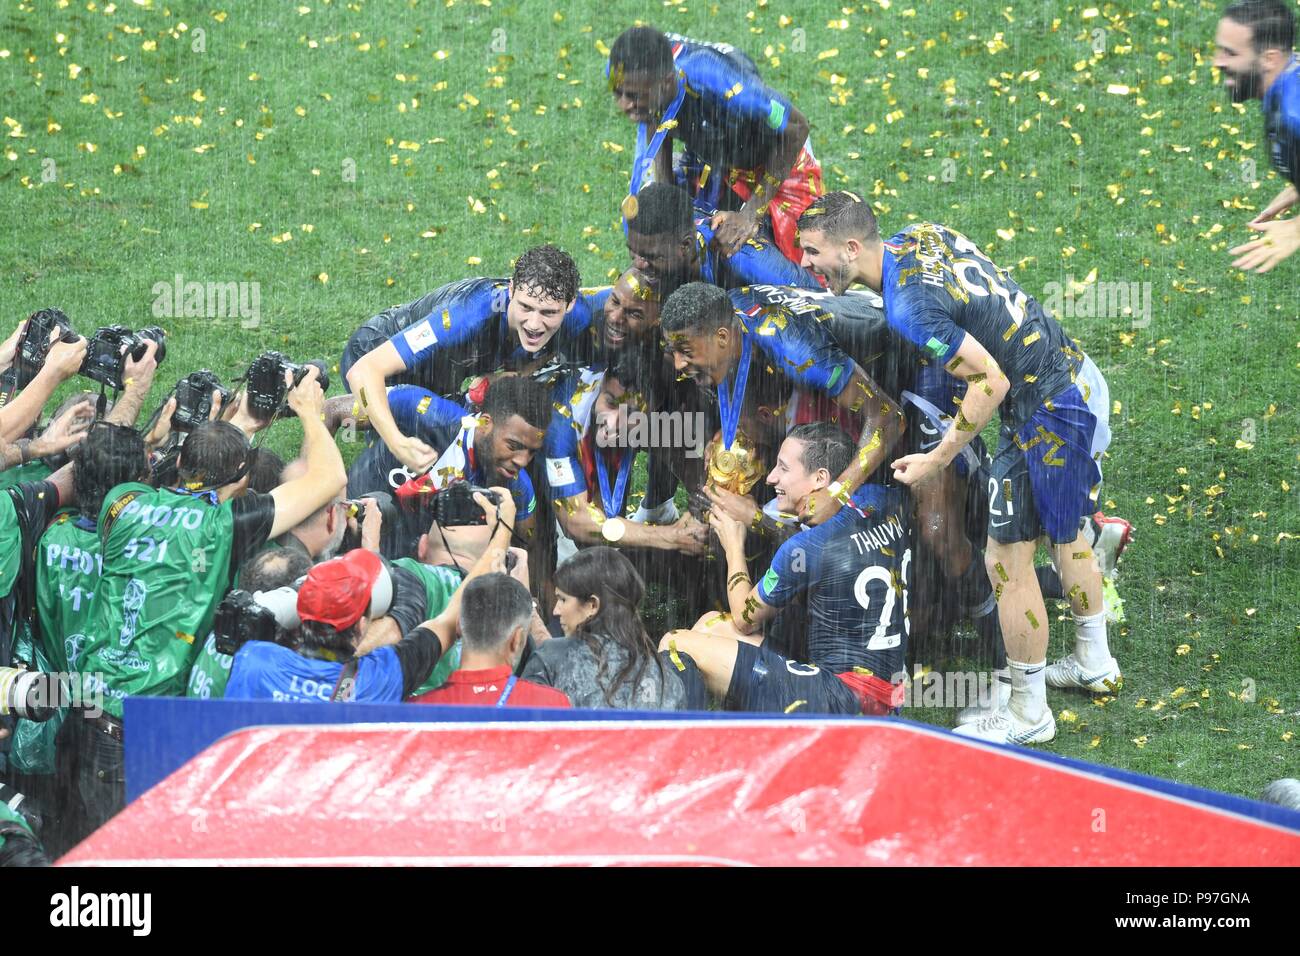 Moscou, Russie. 15 juillet 2018, l'équipe nationale du football de France célèbrent leur victoire de la coupe du monde 2018 au final, stade Luzhniki de Moscou. Shoja Lak/Alamy Live News Banque D'Images